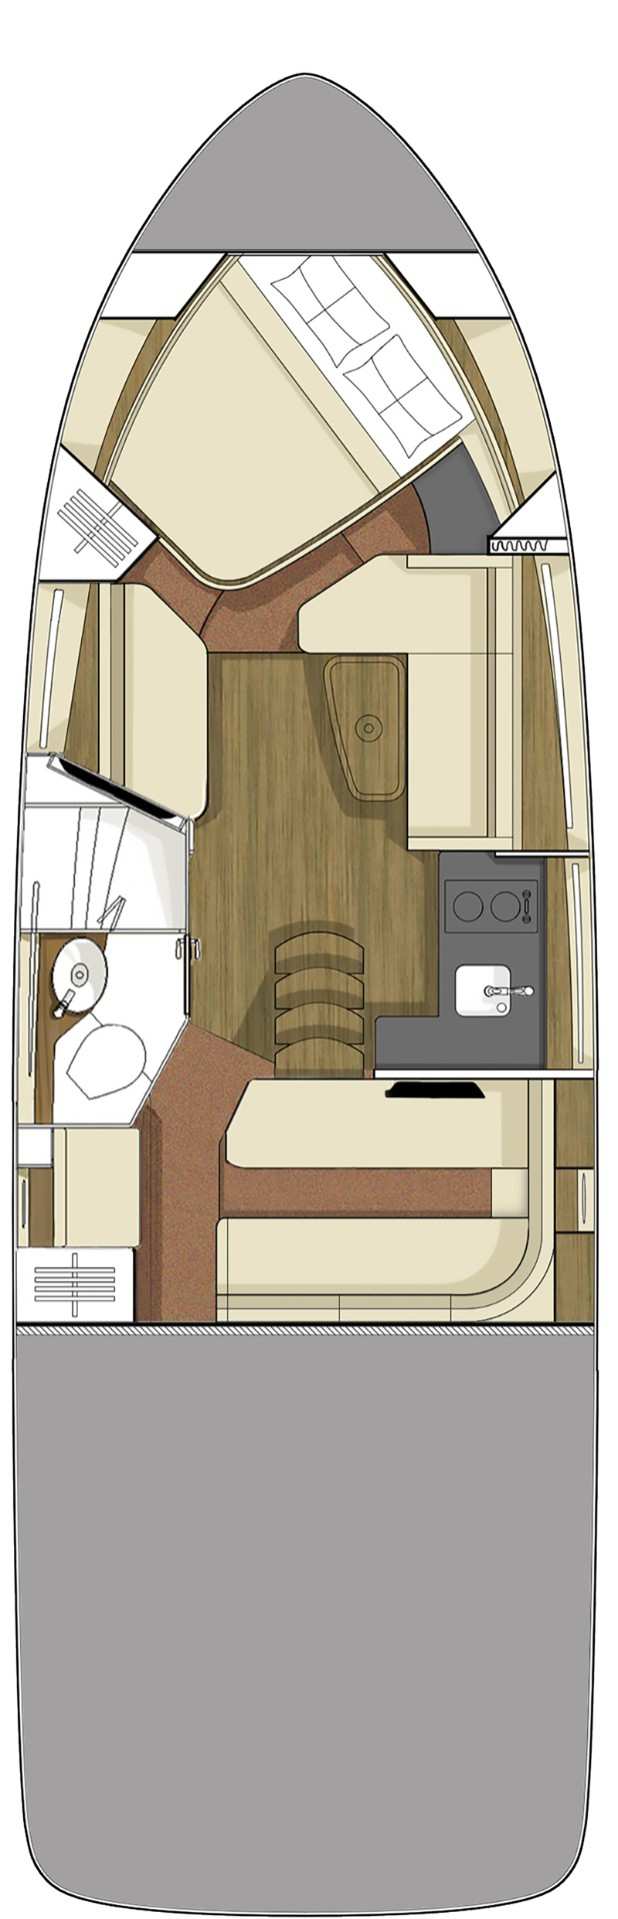 Sundancer 350 Cabin Standard floor plan